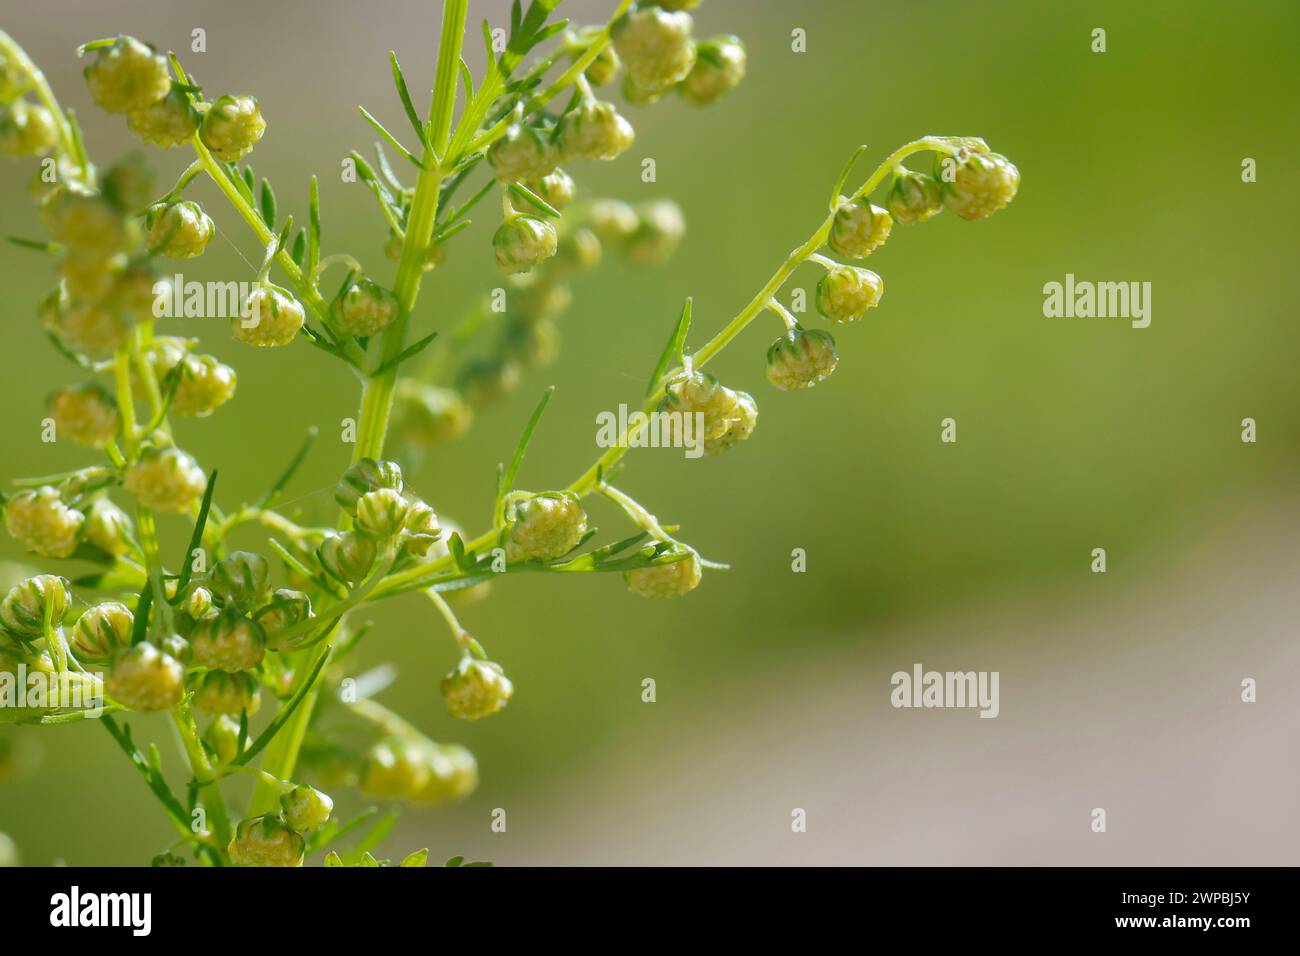 Armoise douce, annie douce, armoise douce, armoise annuelle, armoise annuelle (Artemisia annua, Artemisia chamomilla), floraison, Allemagne Banque D'Images